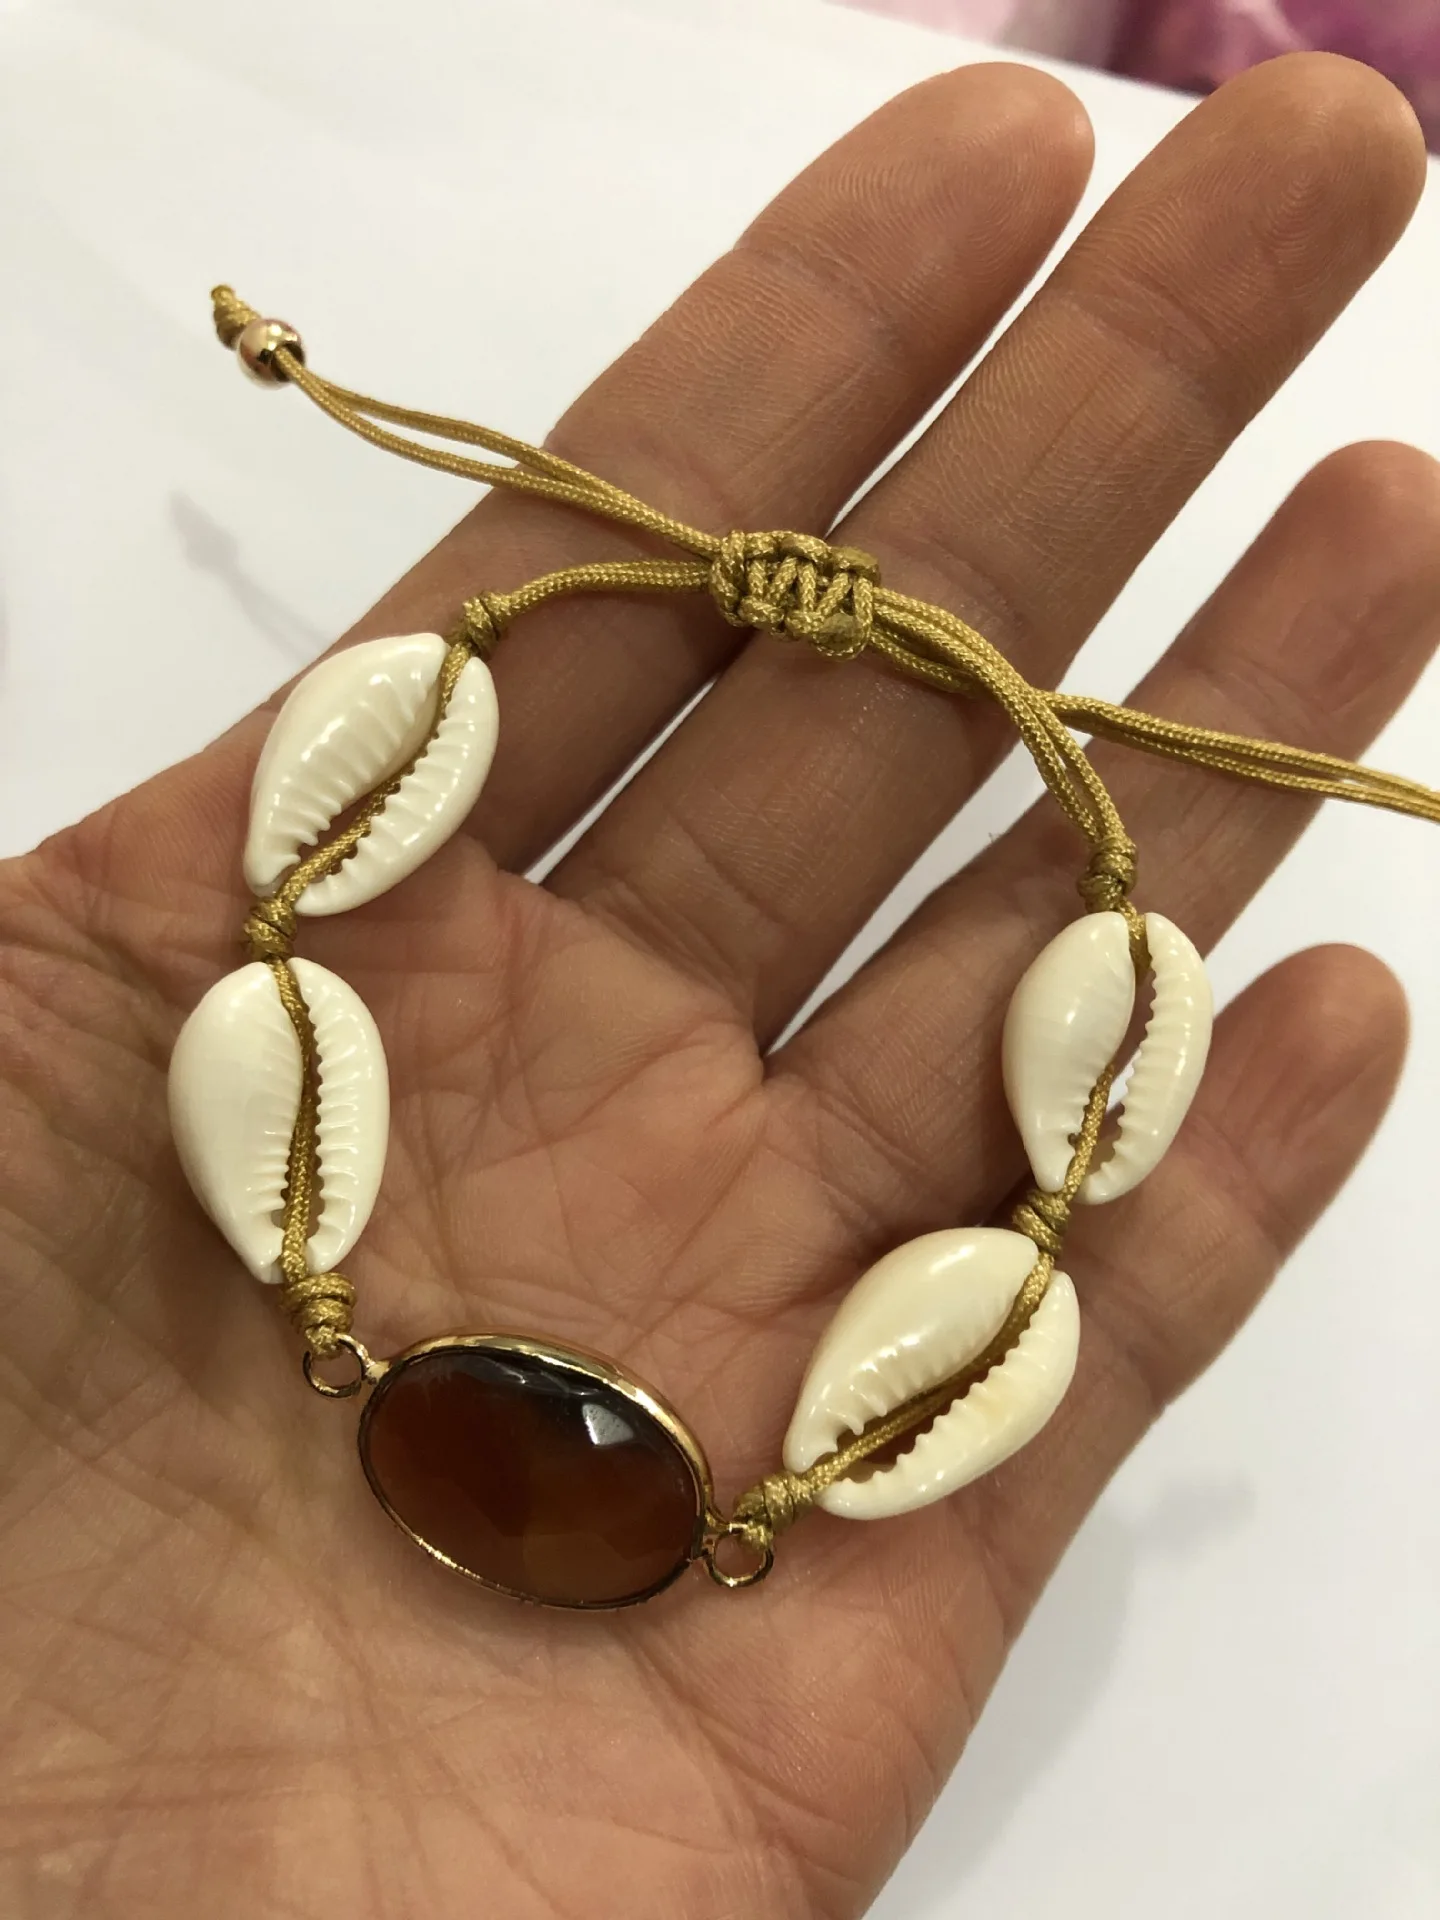 MLING винтажный браслет в виде ракушки для женщин Золотой регулируемый браслет на запястье женские ювелирные изделия бохо подарки